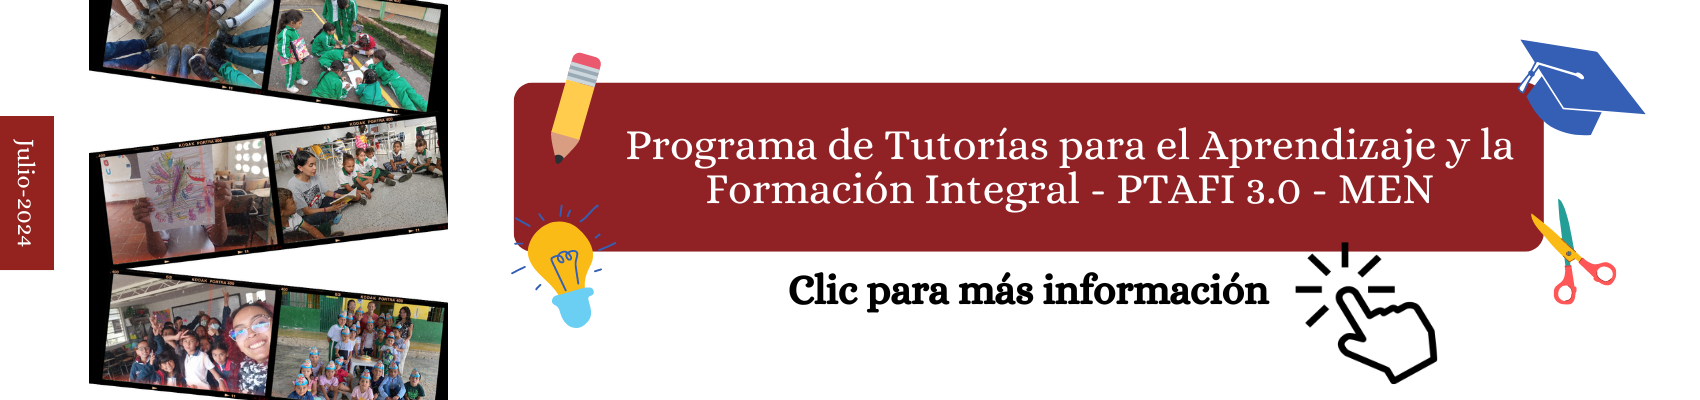 Programa de Tutorías para el Aprendizaje y la Formación Integral - PTAFI 3.0 -MEN